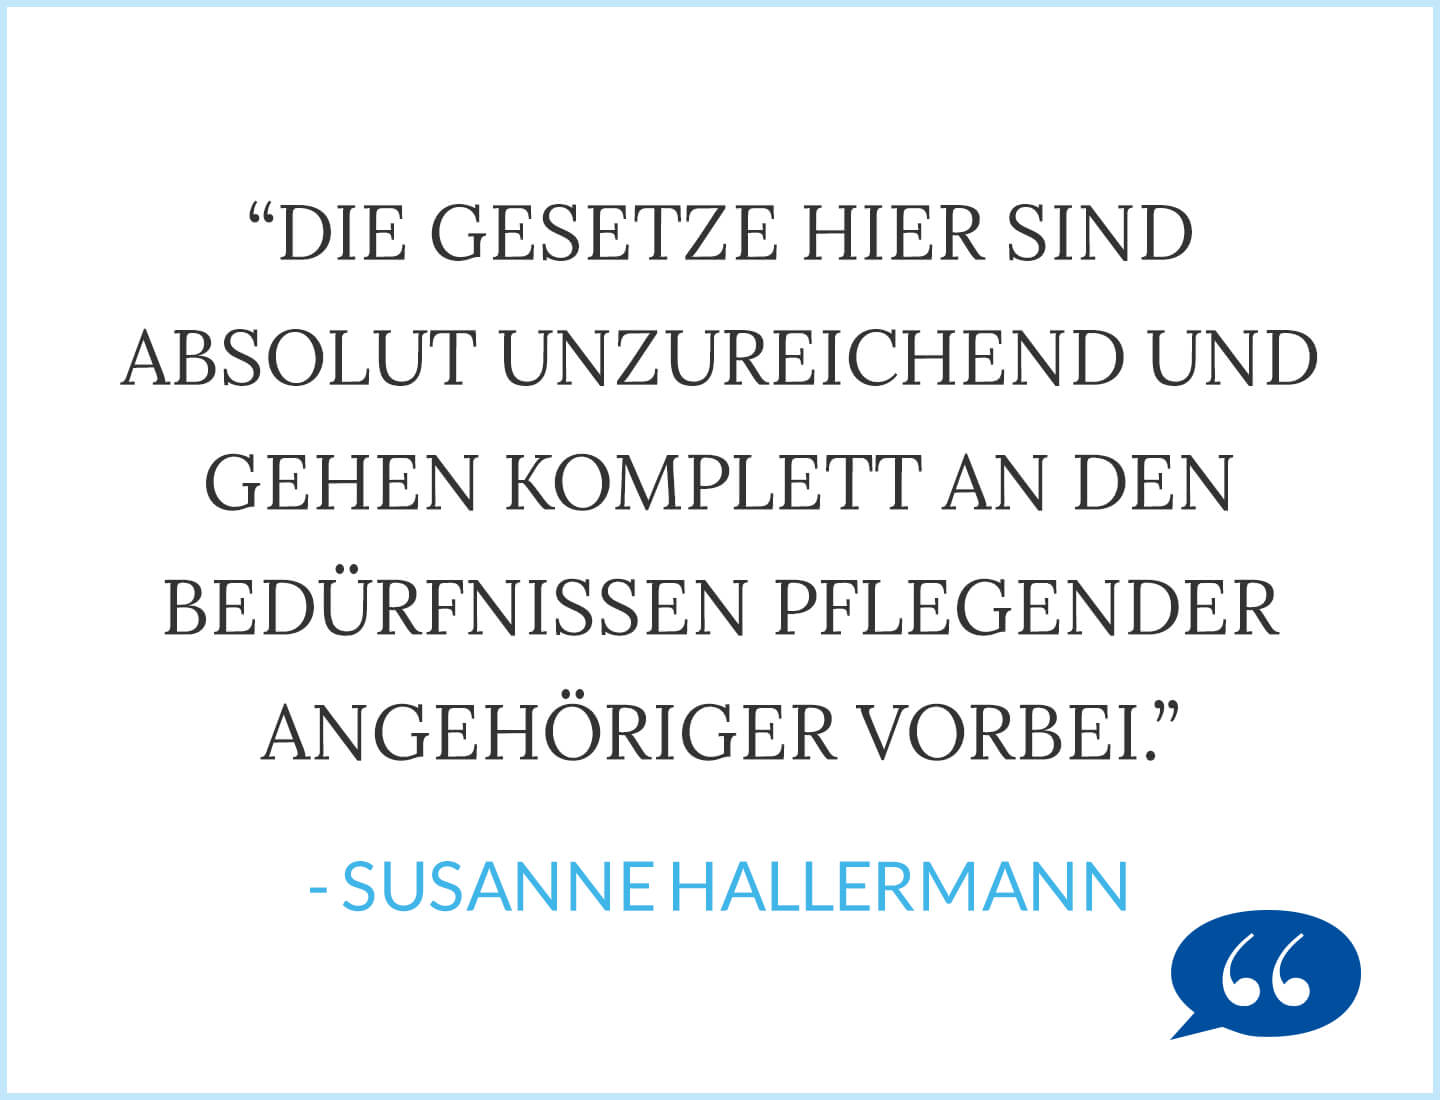 Die Gesetze hier sind absolut unzureichend und gehen komplett an den Bedürfnissen pflegender angehöriger vorbei. - Susanne Hallermann